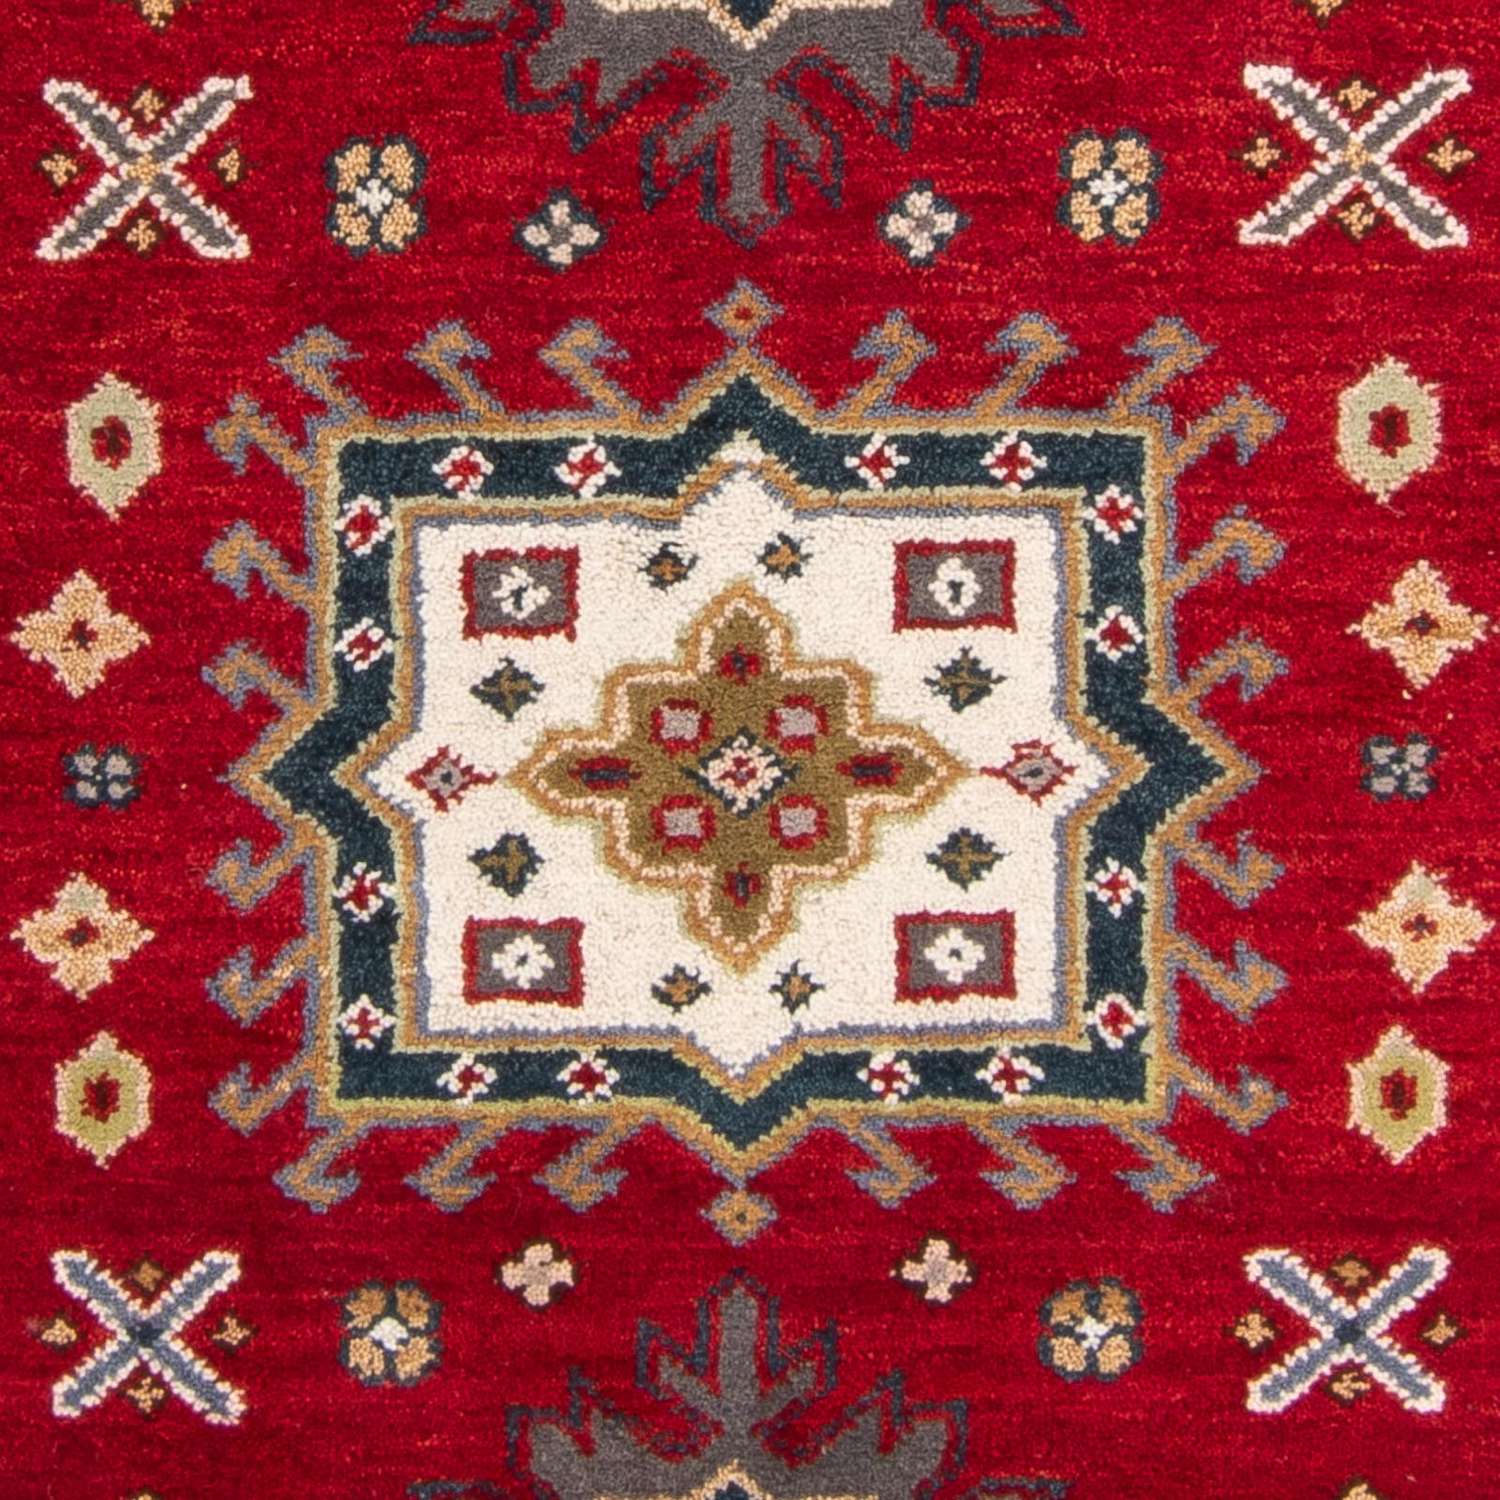 Ziegler Rug - Kazak - 198 x 145 cm - red